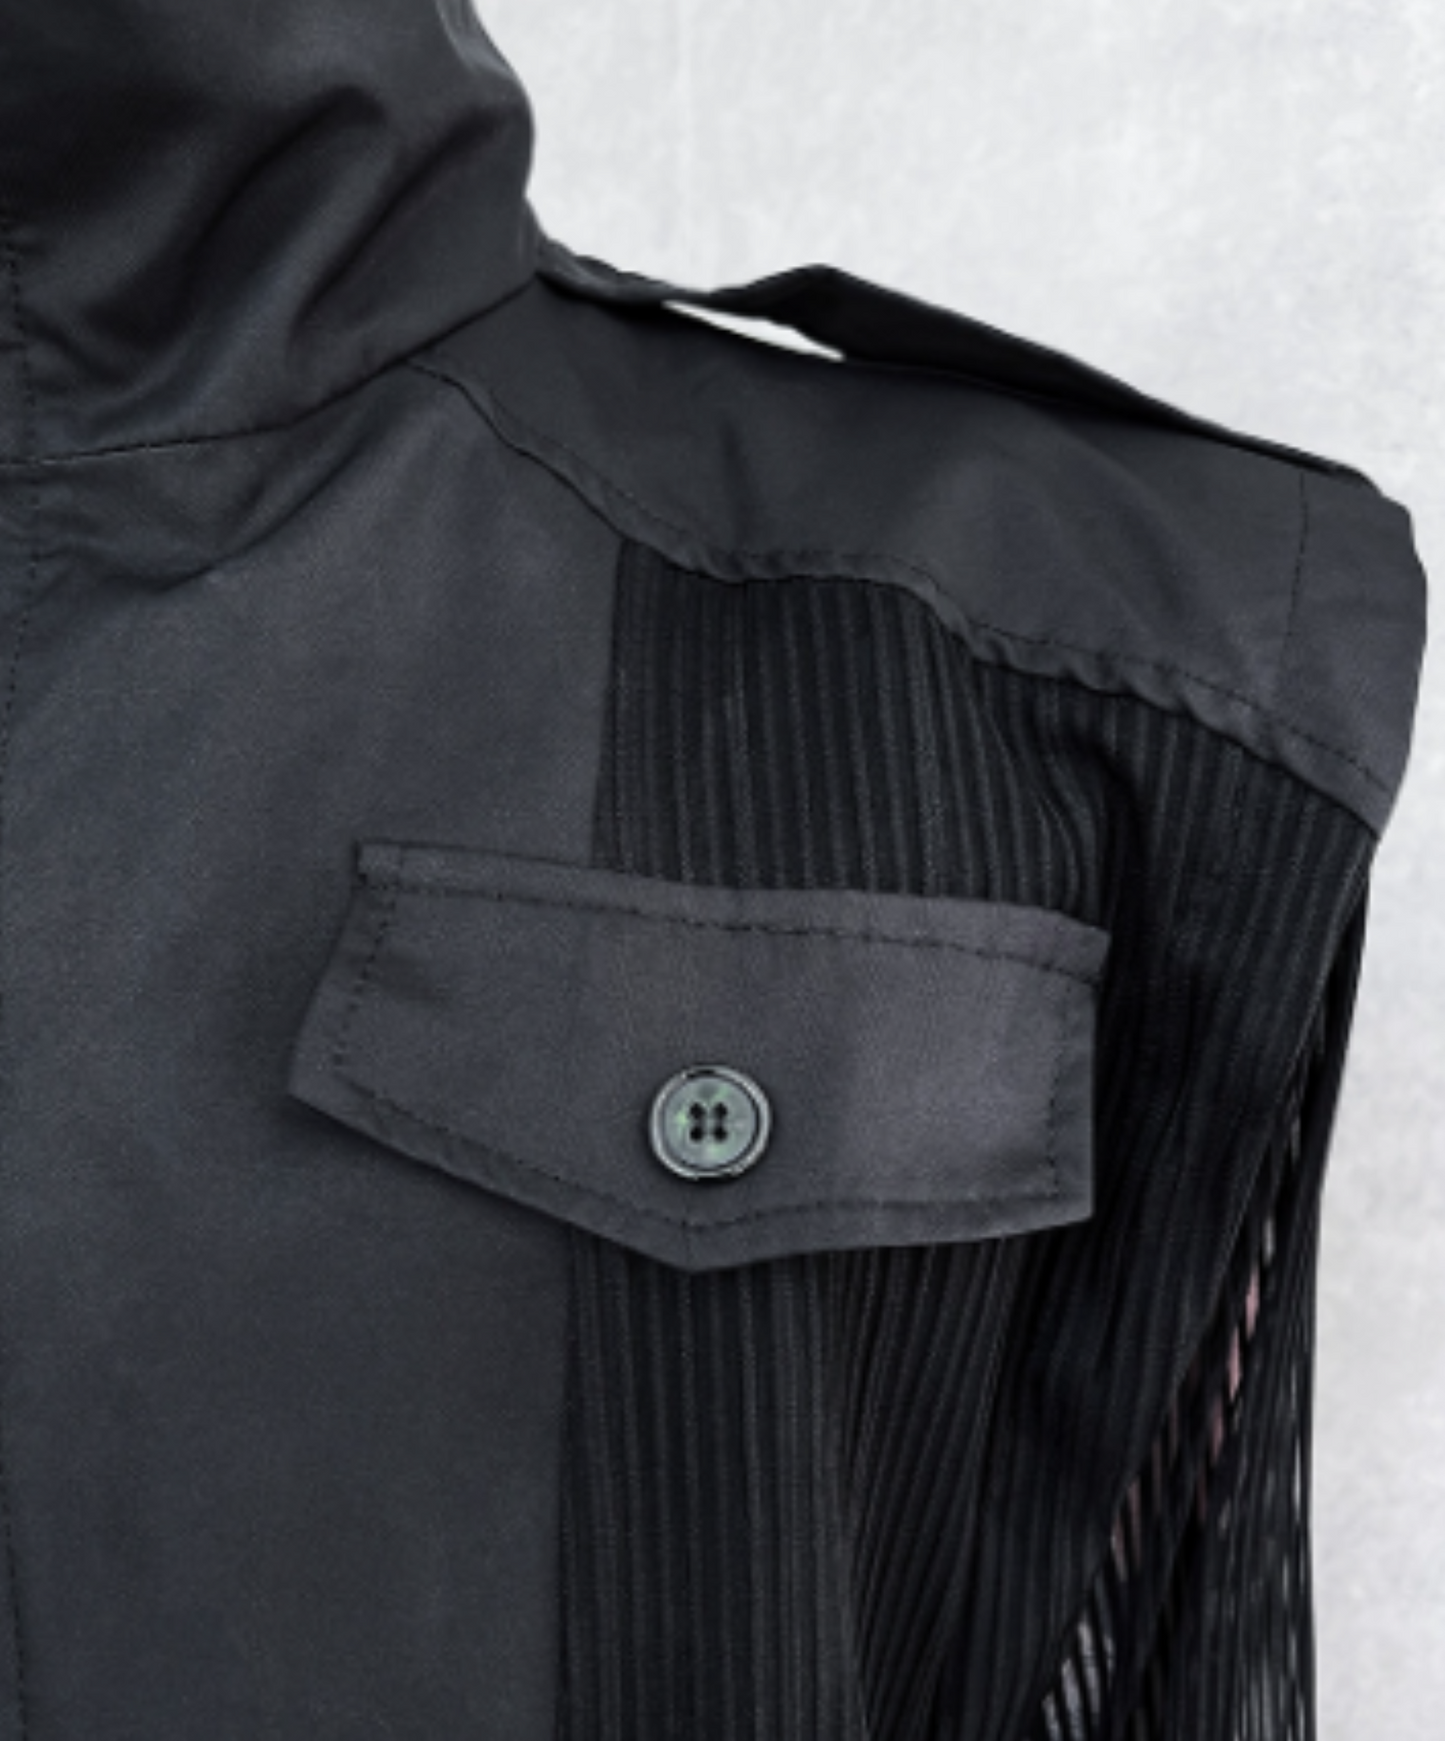 dark vertical mesh high neck jacket EN1137